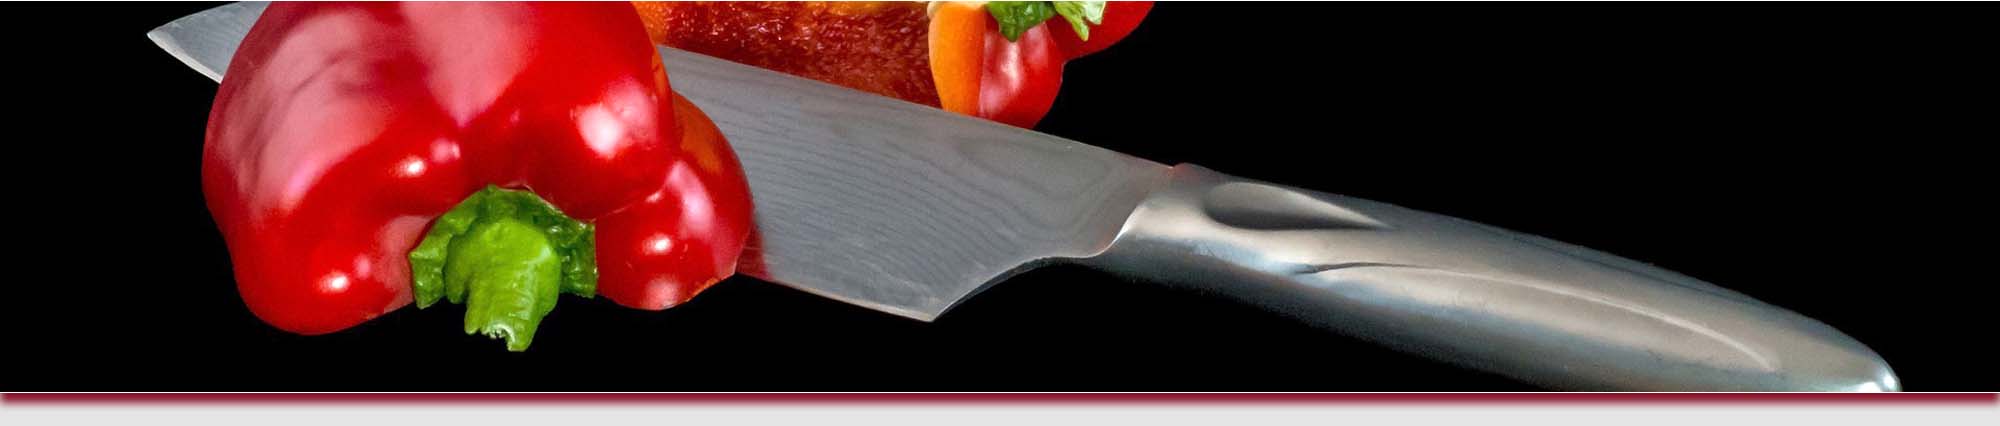 Cuchillería Colmenero - Tienda de cuchillos, navajas, tijeras - Afilar y reparar herramientas cortantes en Donosti (Gipuzkoa)